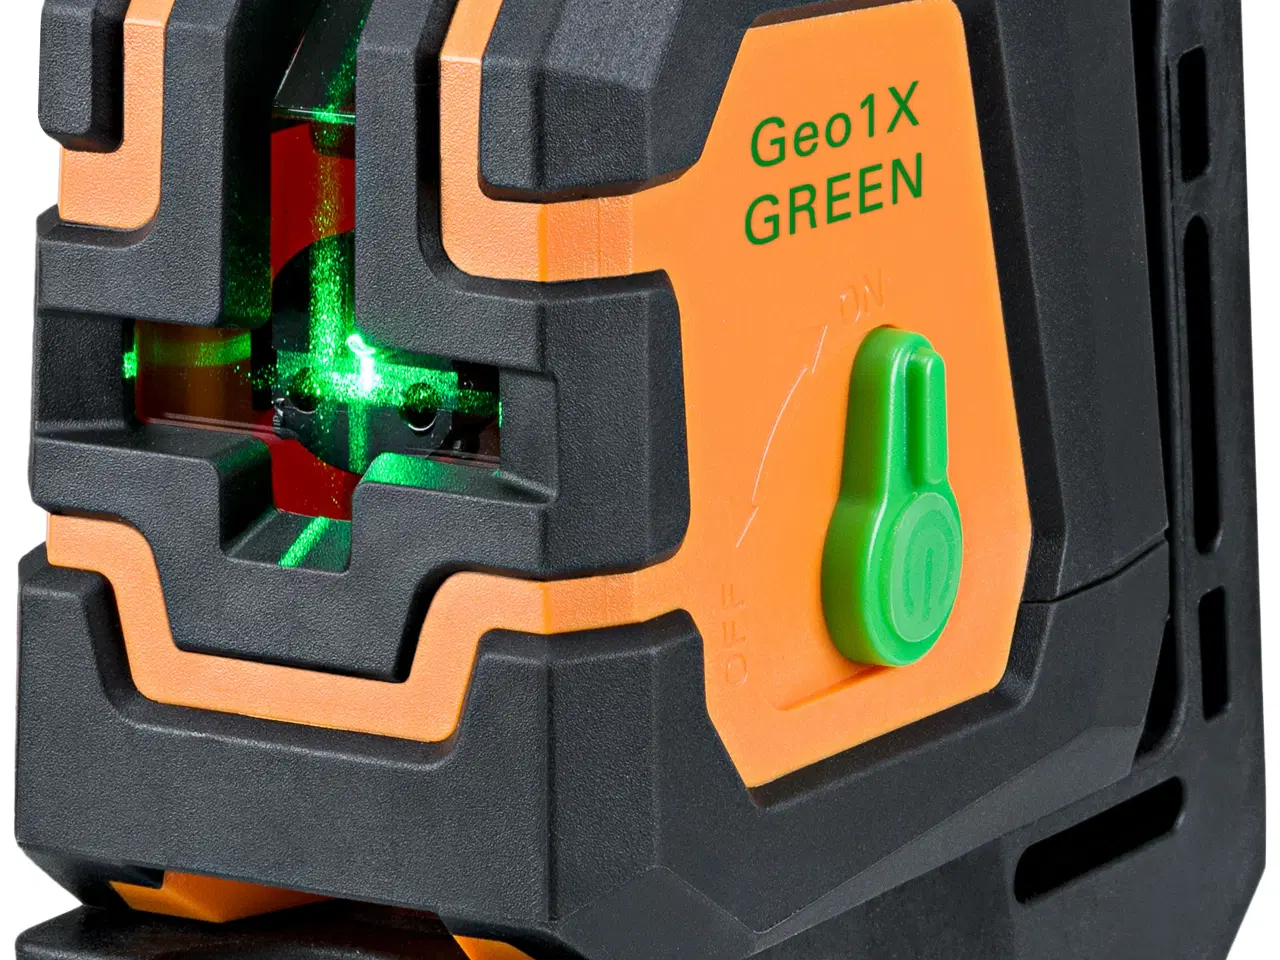 Billede 1 - GeoFennel krydslaser Geo1X med grøn laserstråle